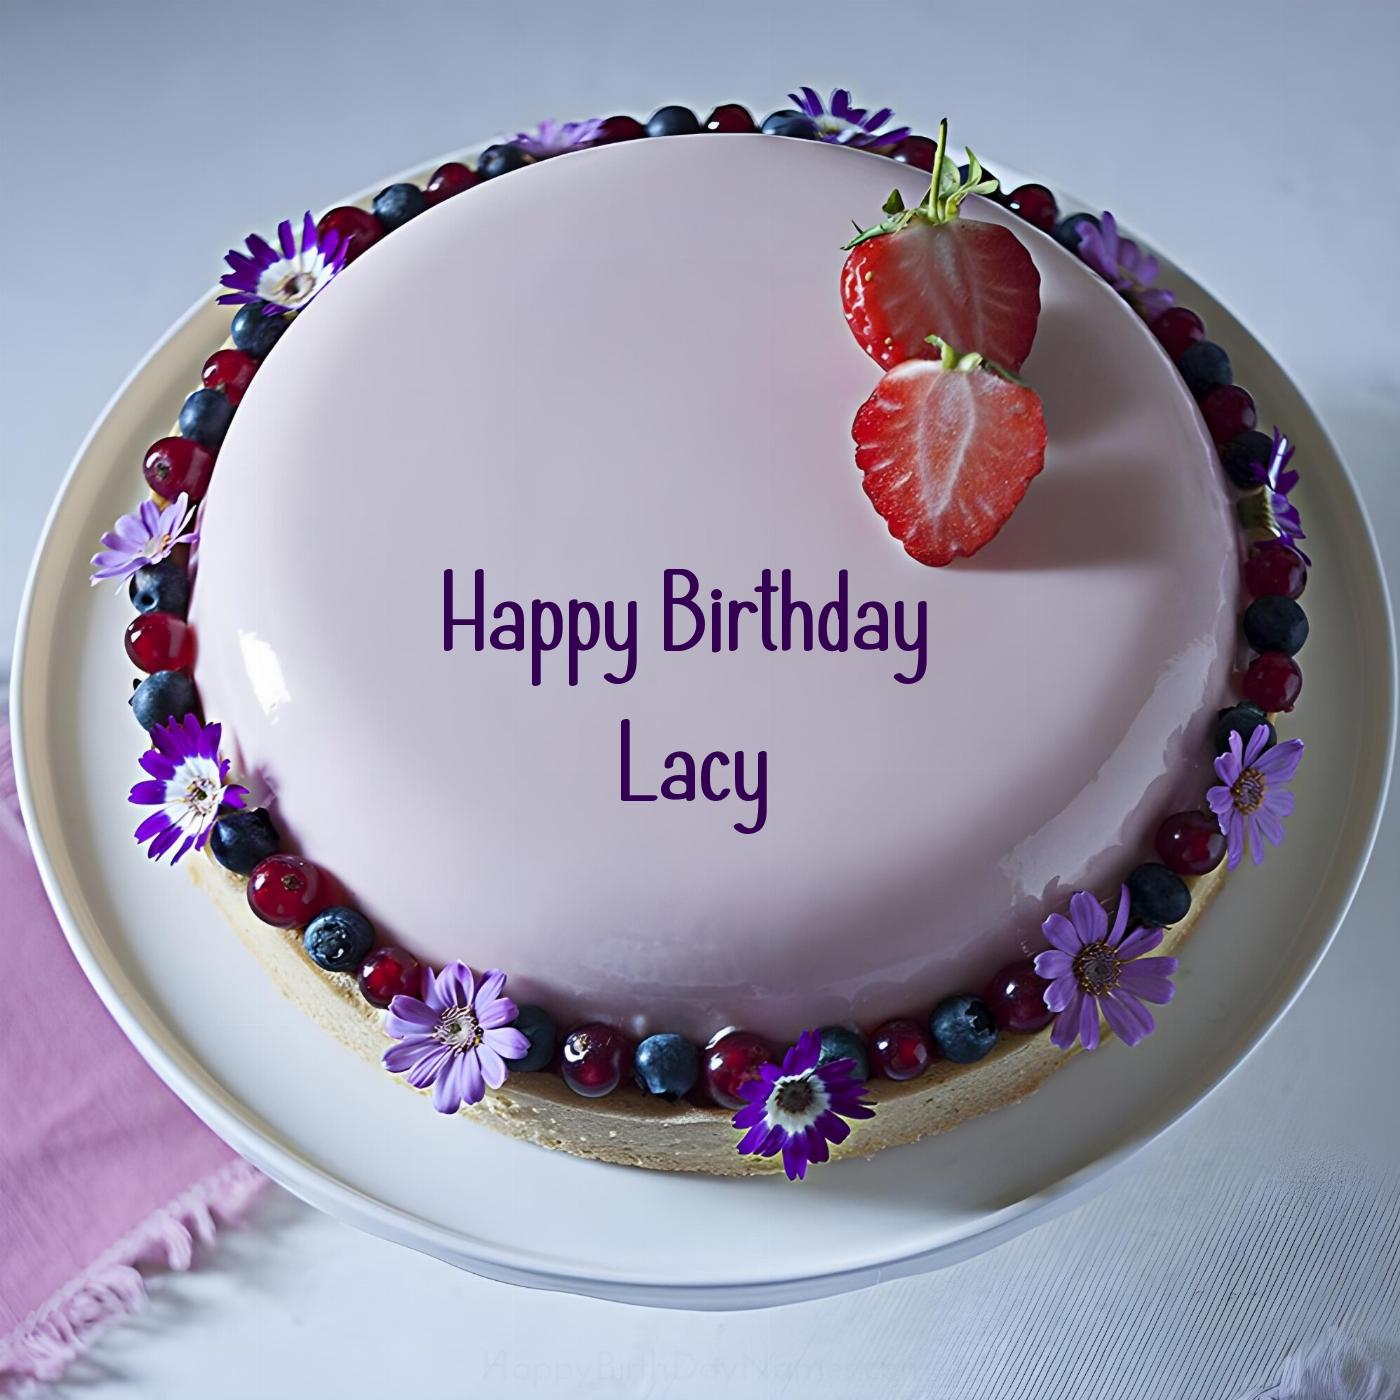 Happy Birthday Lacy Strawberry Flowers Cake